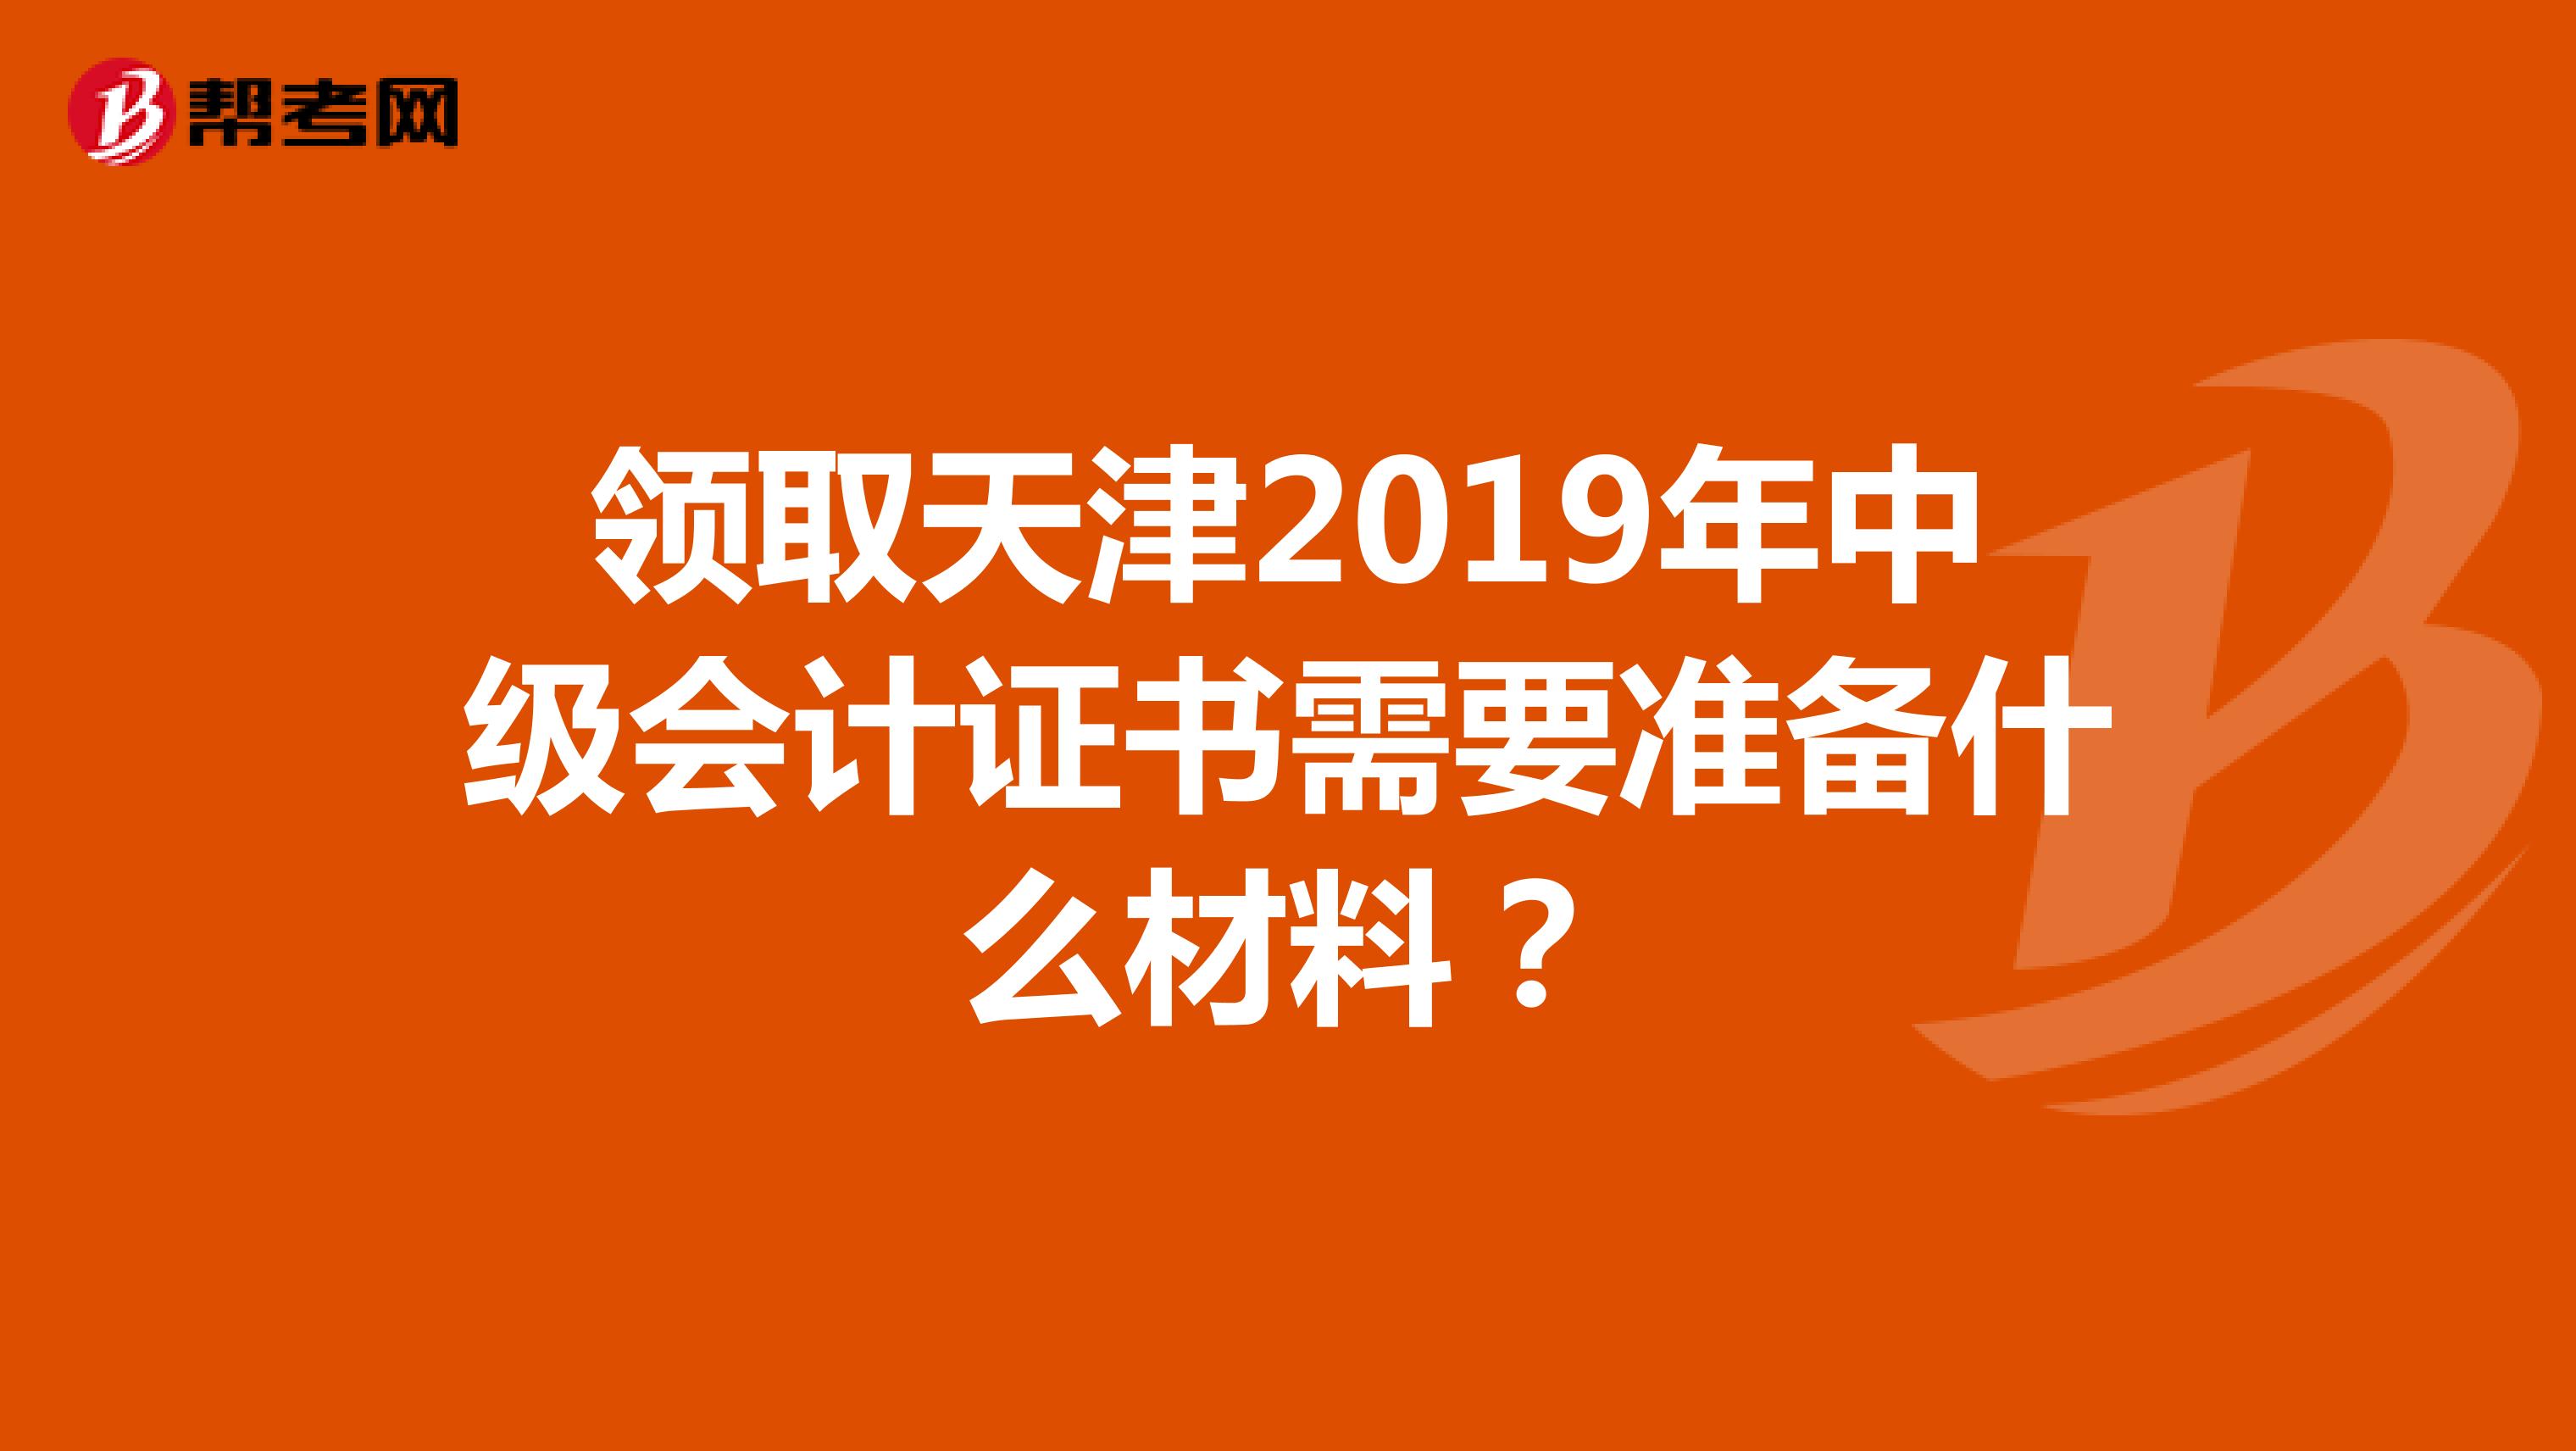 领取天津2019年中级会计证书需要准备什么材料？